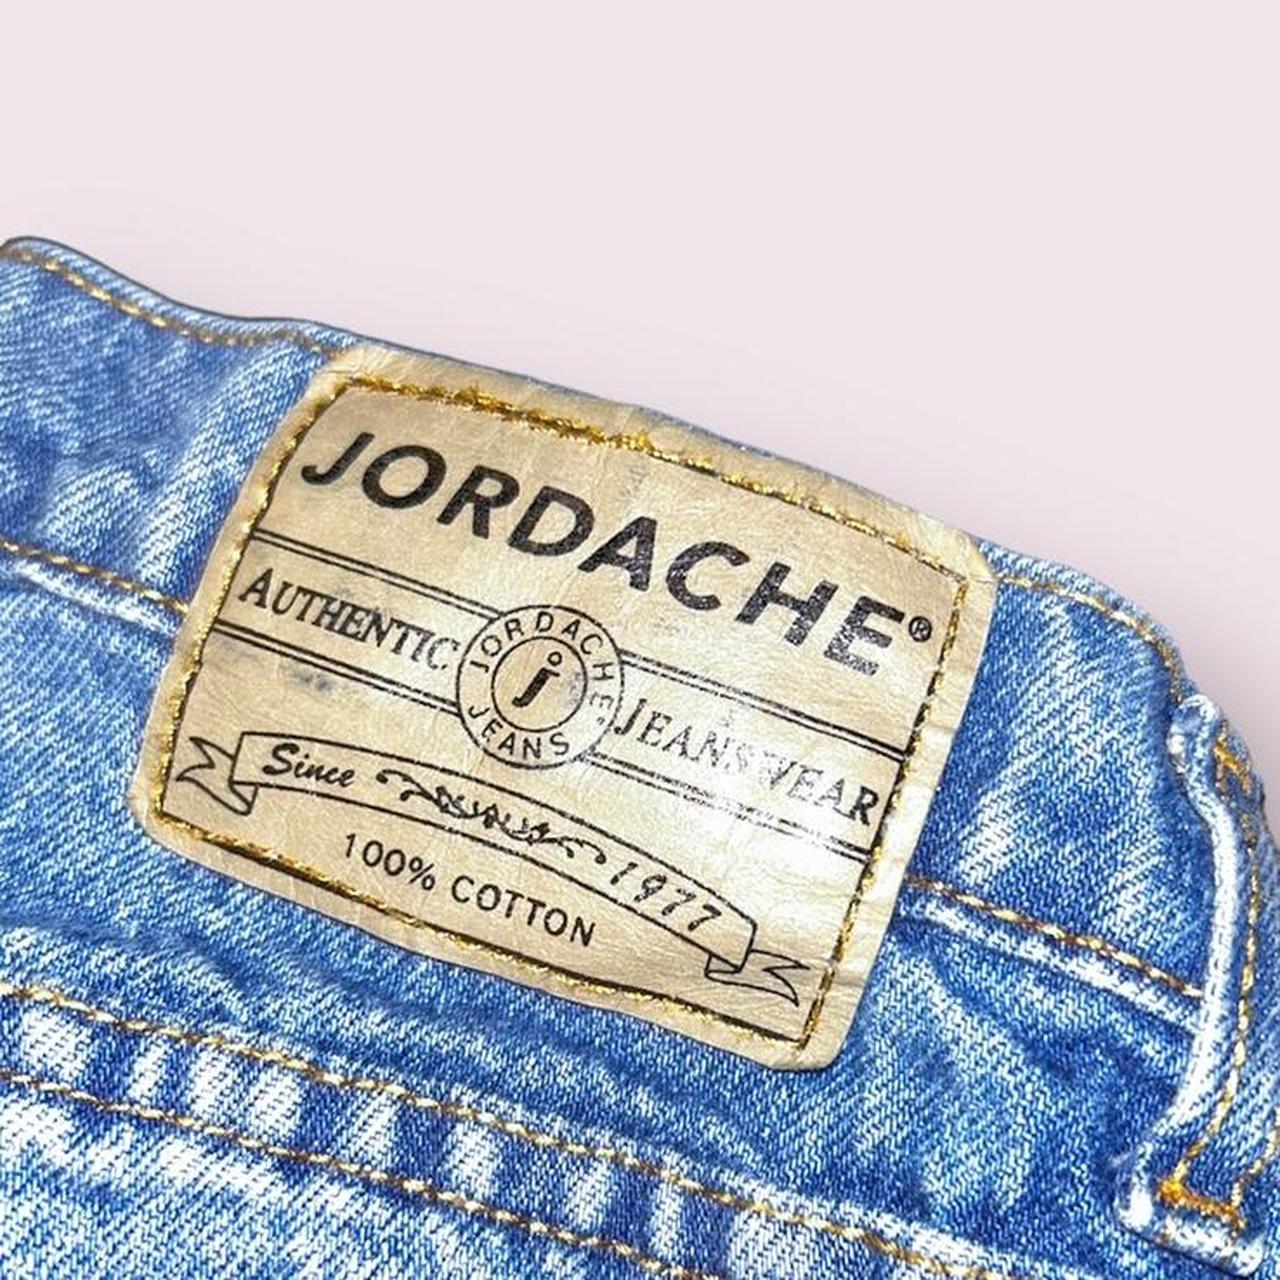 jordache jeans - Depop